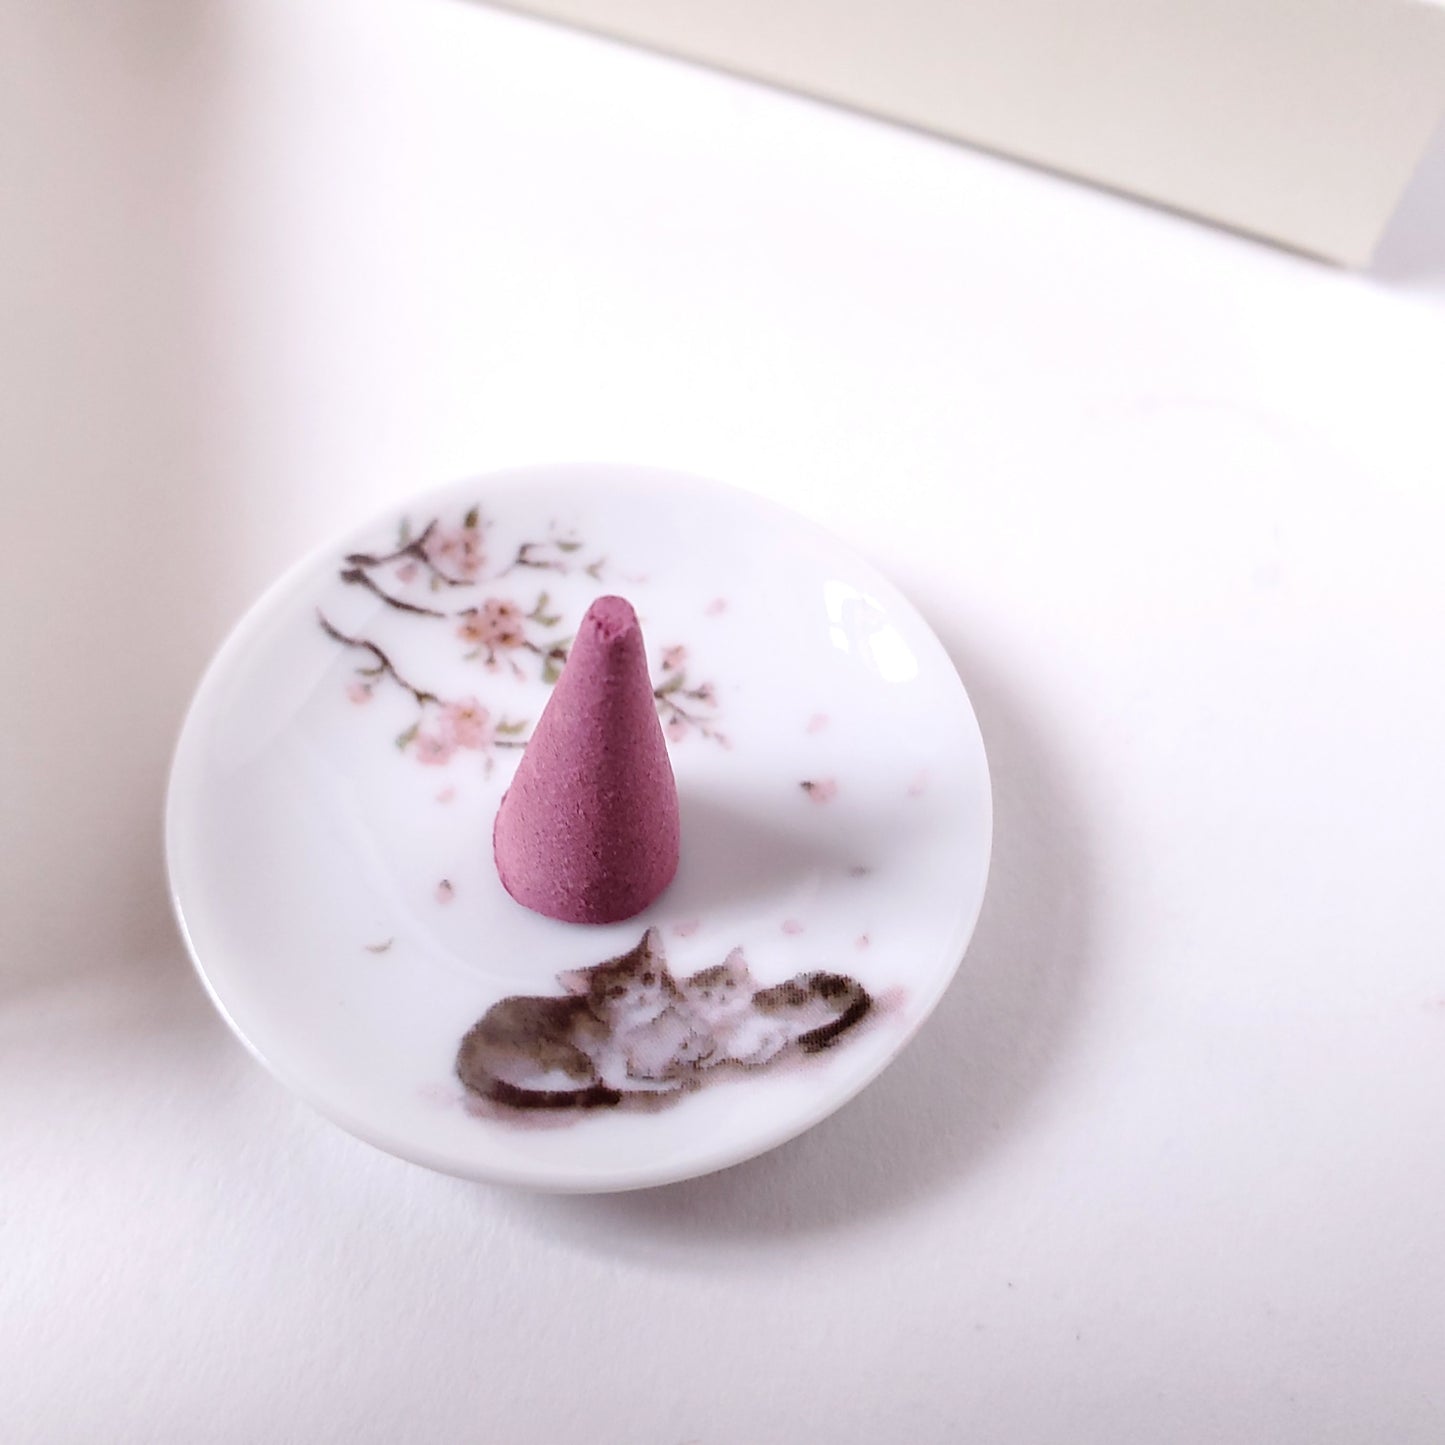 香彩堂 いやしねこ コーンセット 桜花の香り 京都 日本製 香皿付 コーン お香 インセンス アロマ